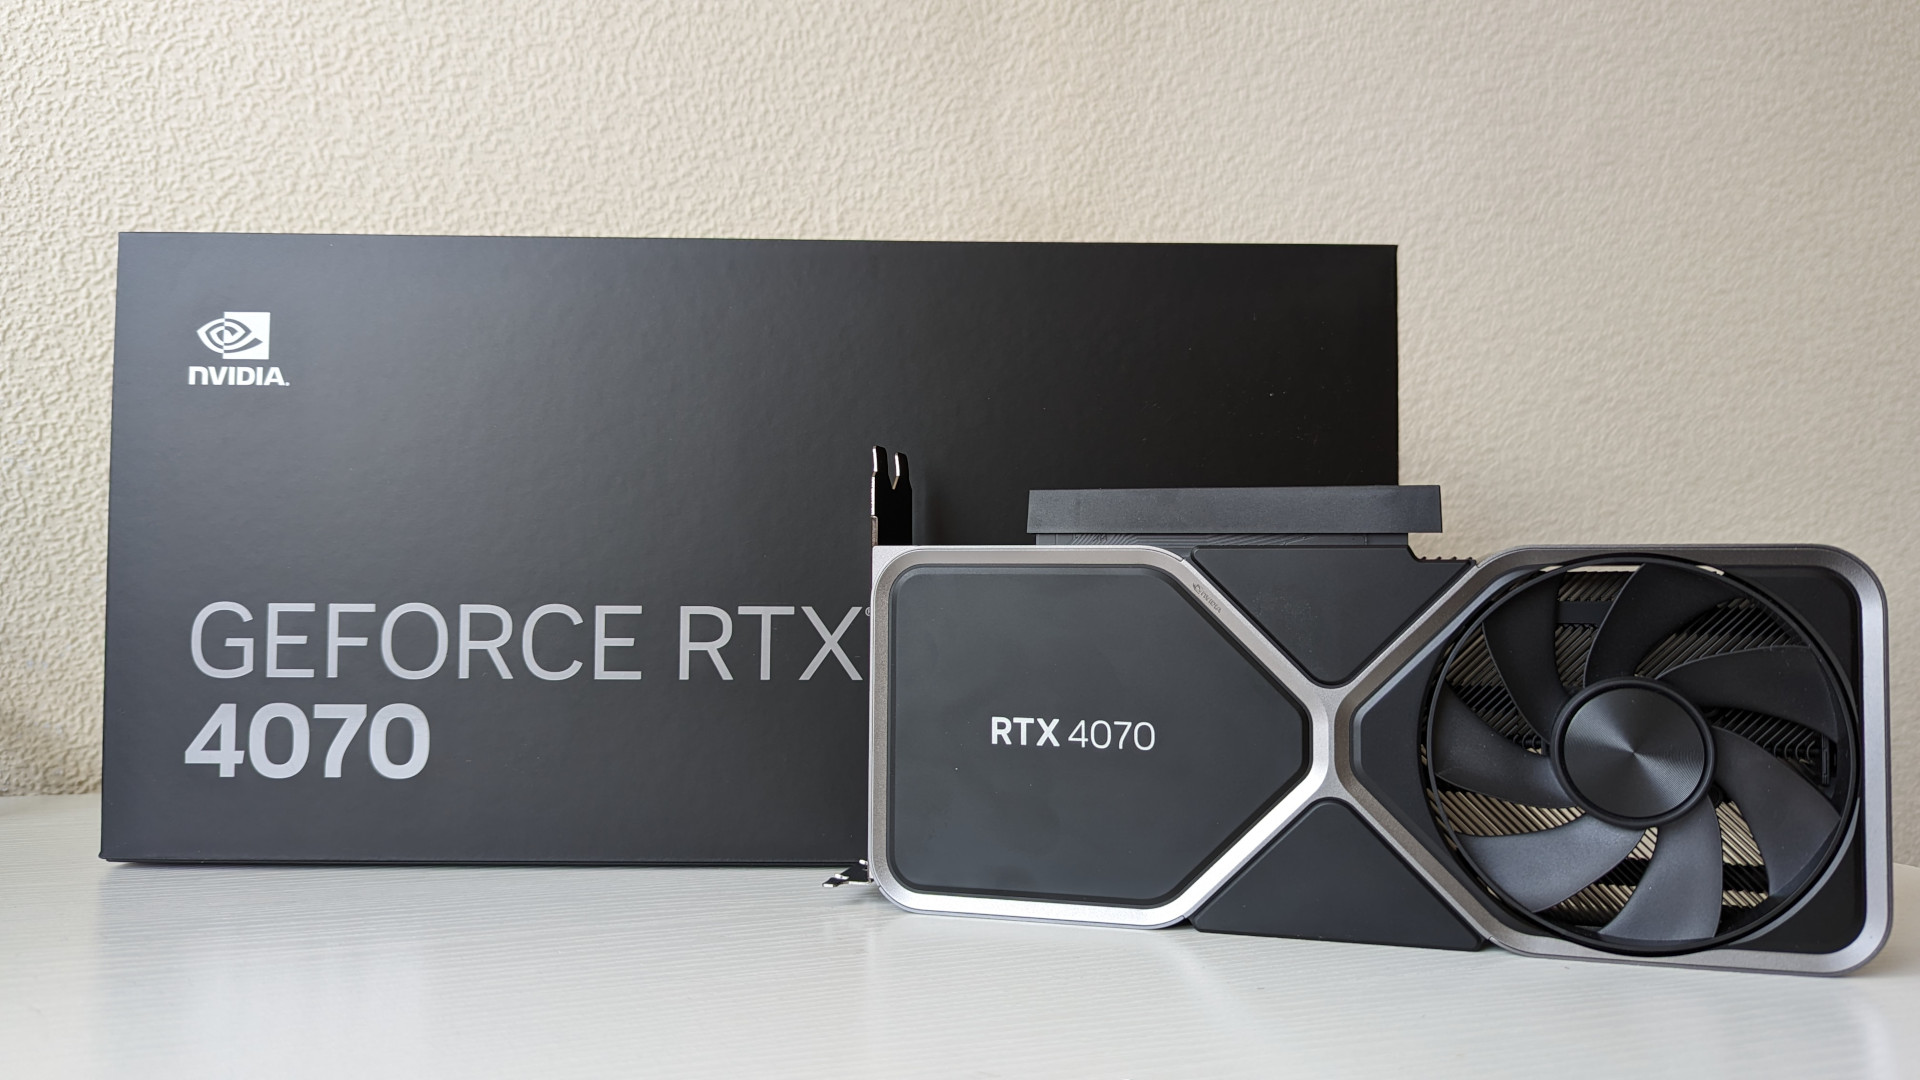 Revisión Nvidia GeForce RTX 4070: Tarjeta gráfica de la edición de Founders adyacente a su empaque minorista